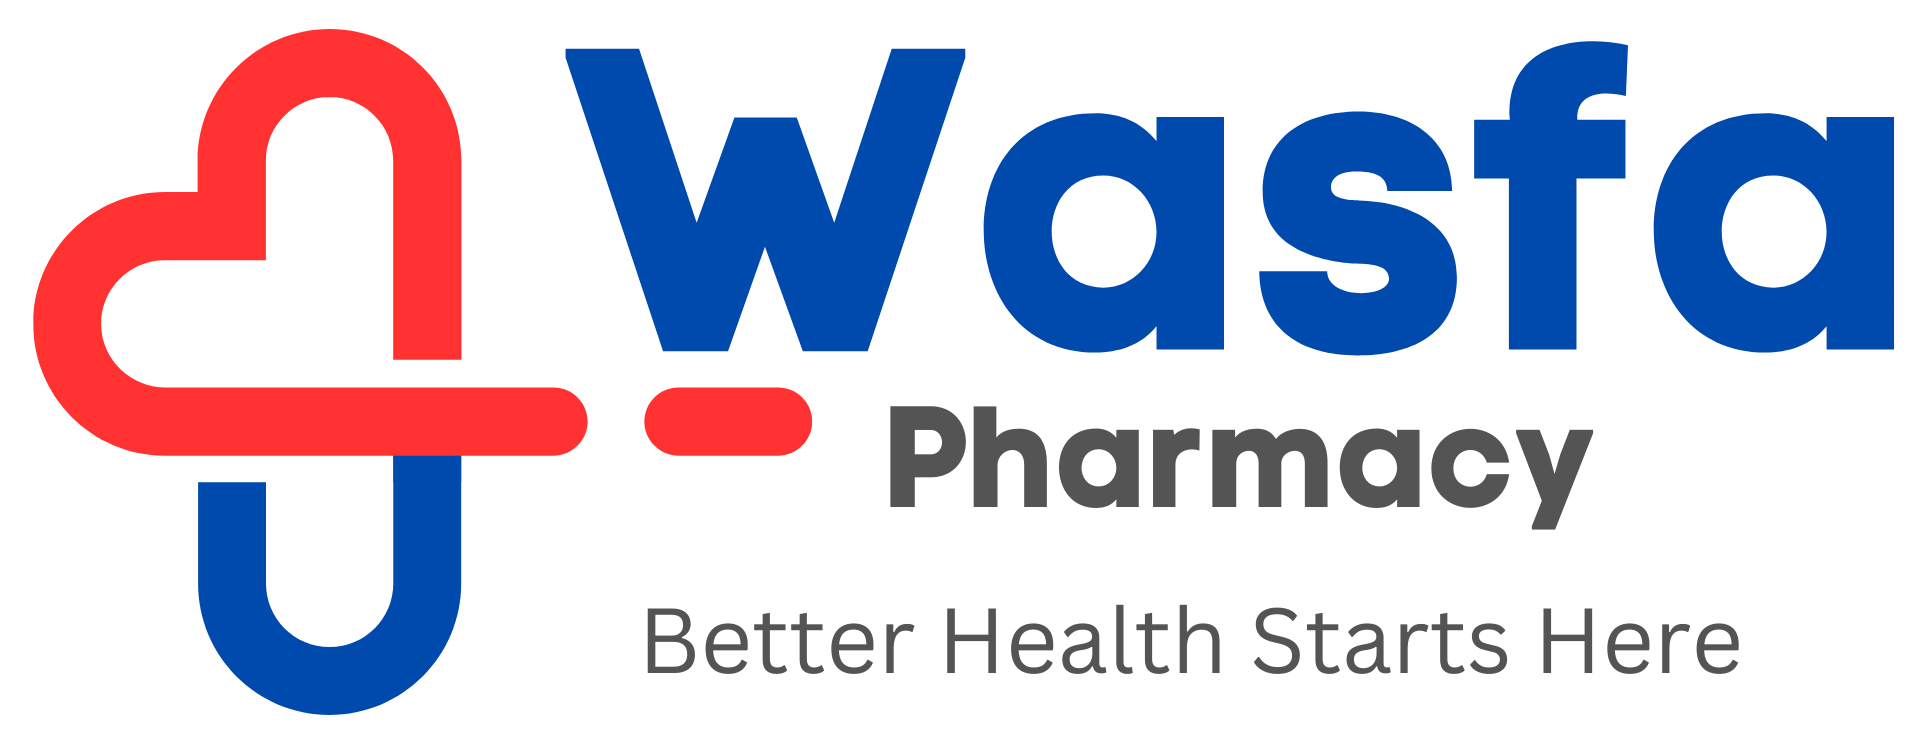 Wasfa Pharmacy